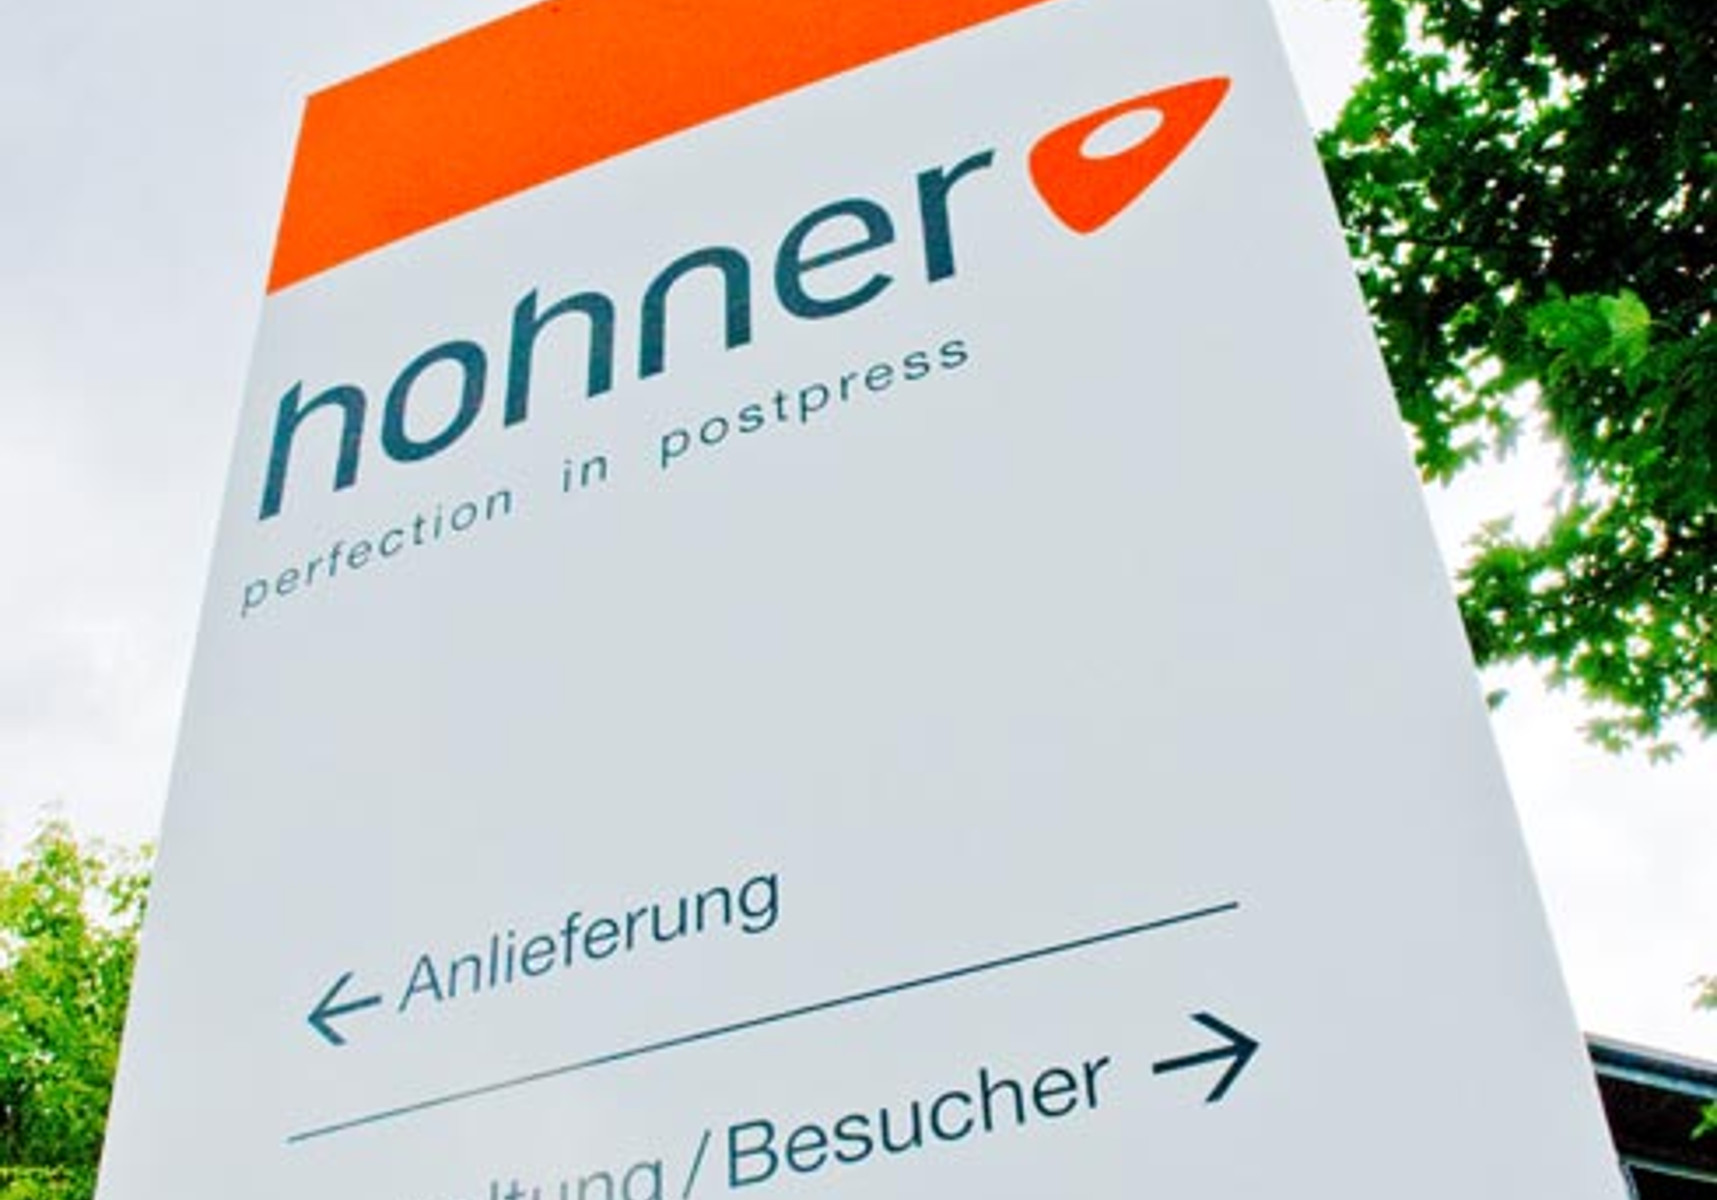 Hohner Messestand Drupa Düsseldorf Unternehmen